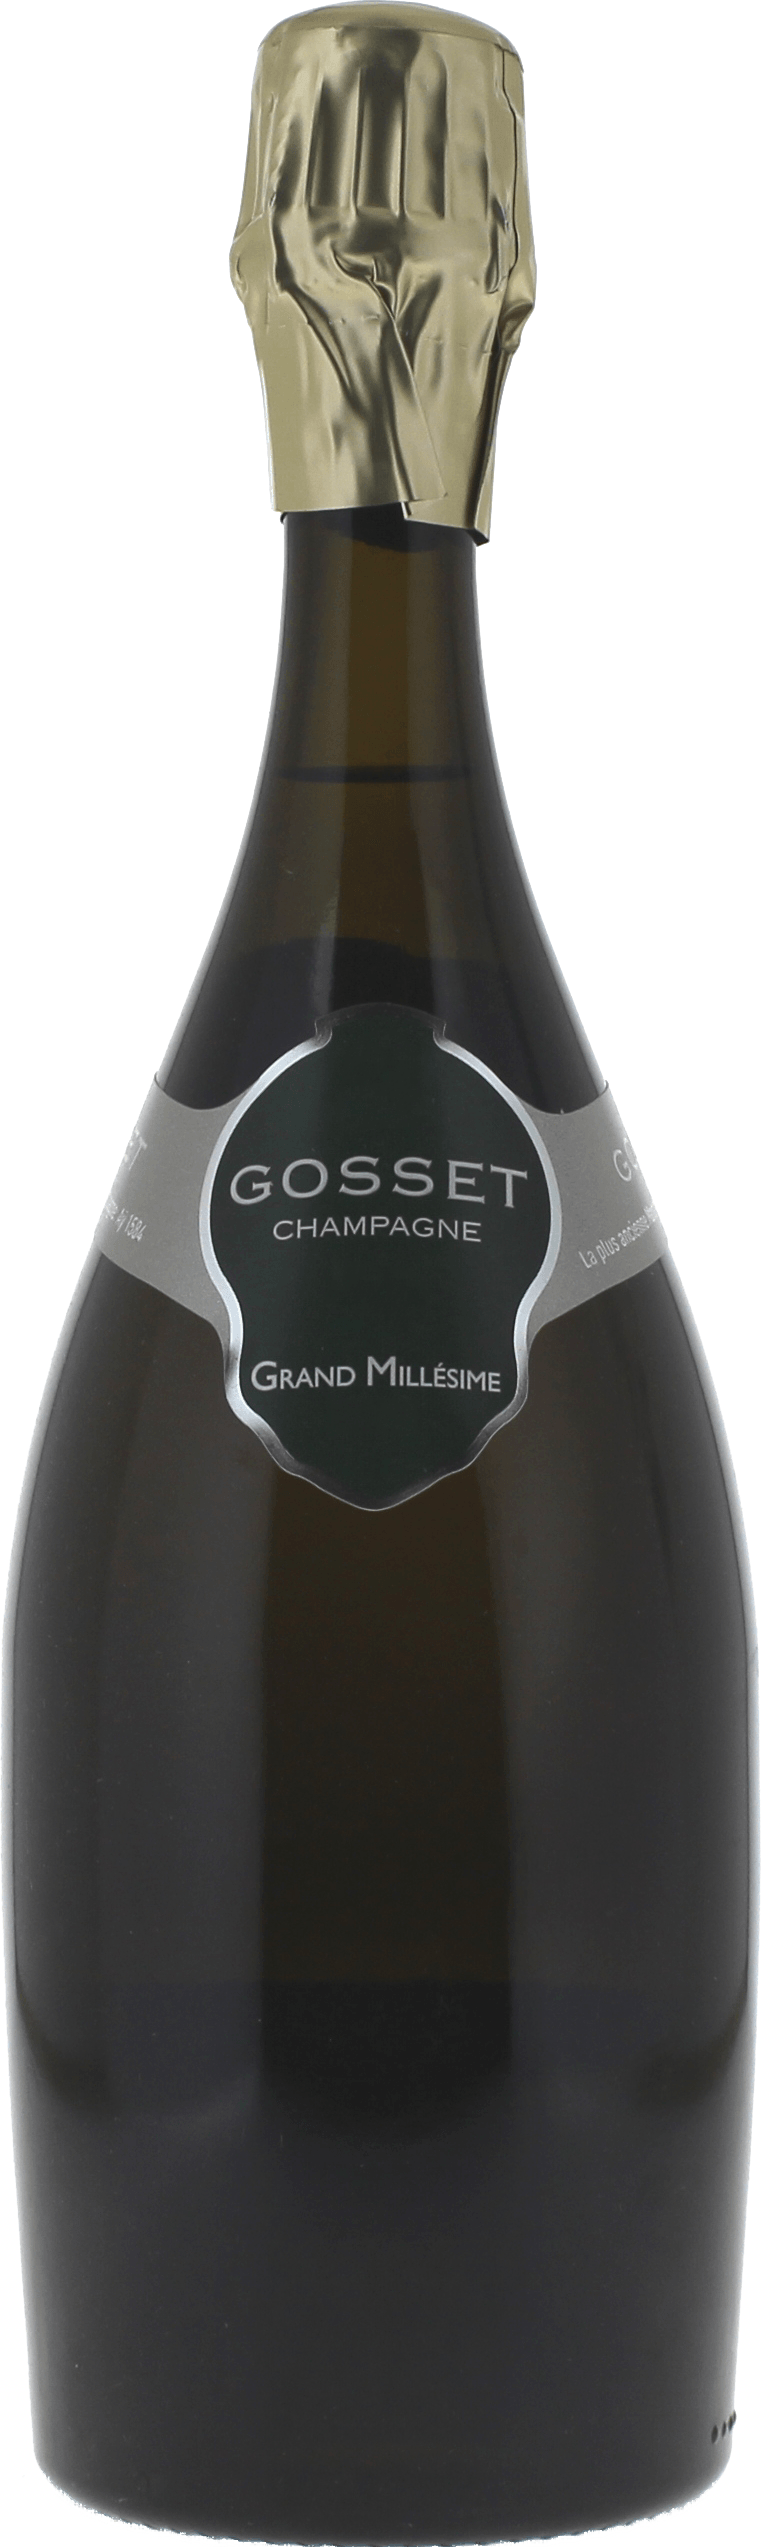 Gosset grand millsime brut 2012  Gosset, Champagne